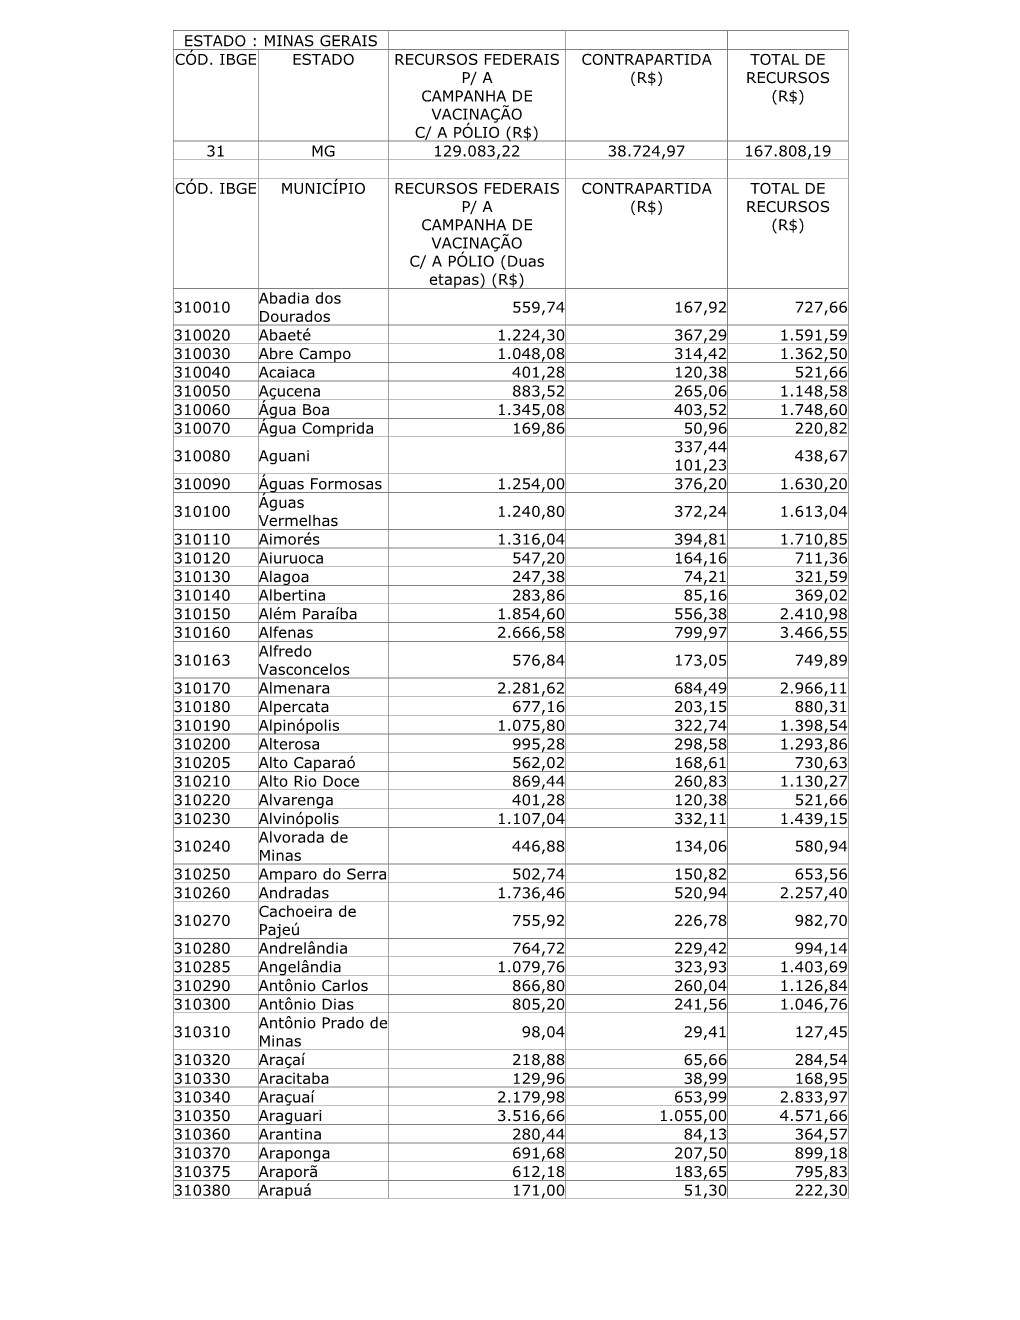 Estado : Minas Gerais Cód. Ibge Estado Recursos Federais P/ a Campanha De Vacinação C/ a Pólio (R$) Contrapartida (R$) Total